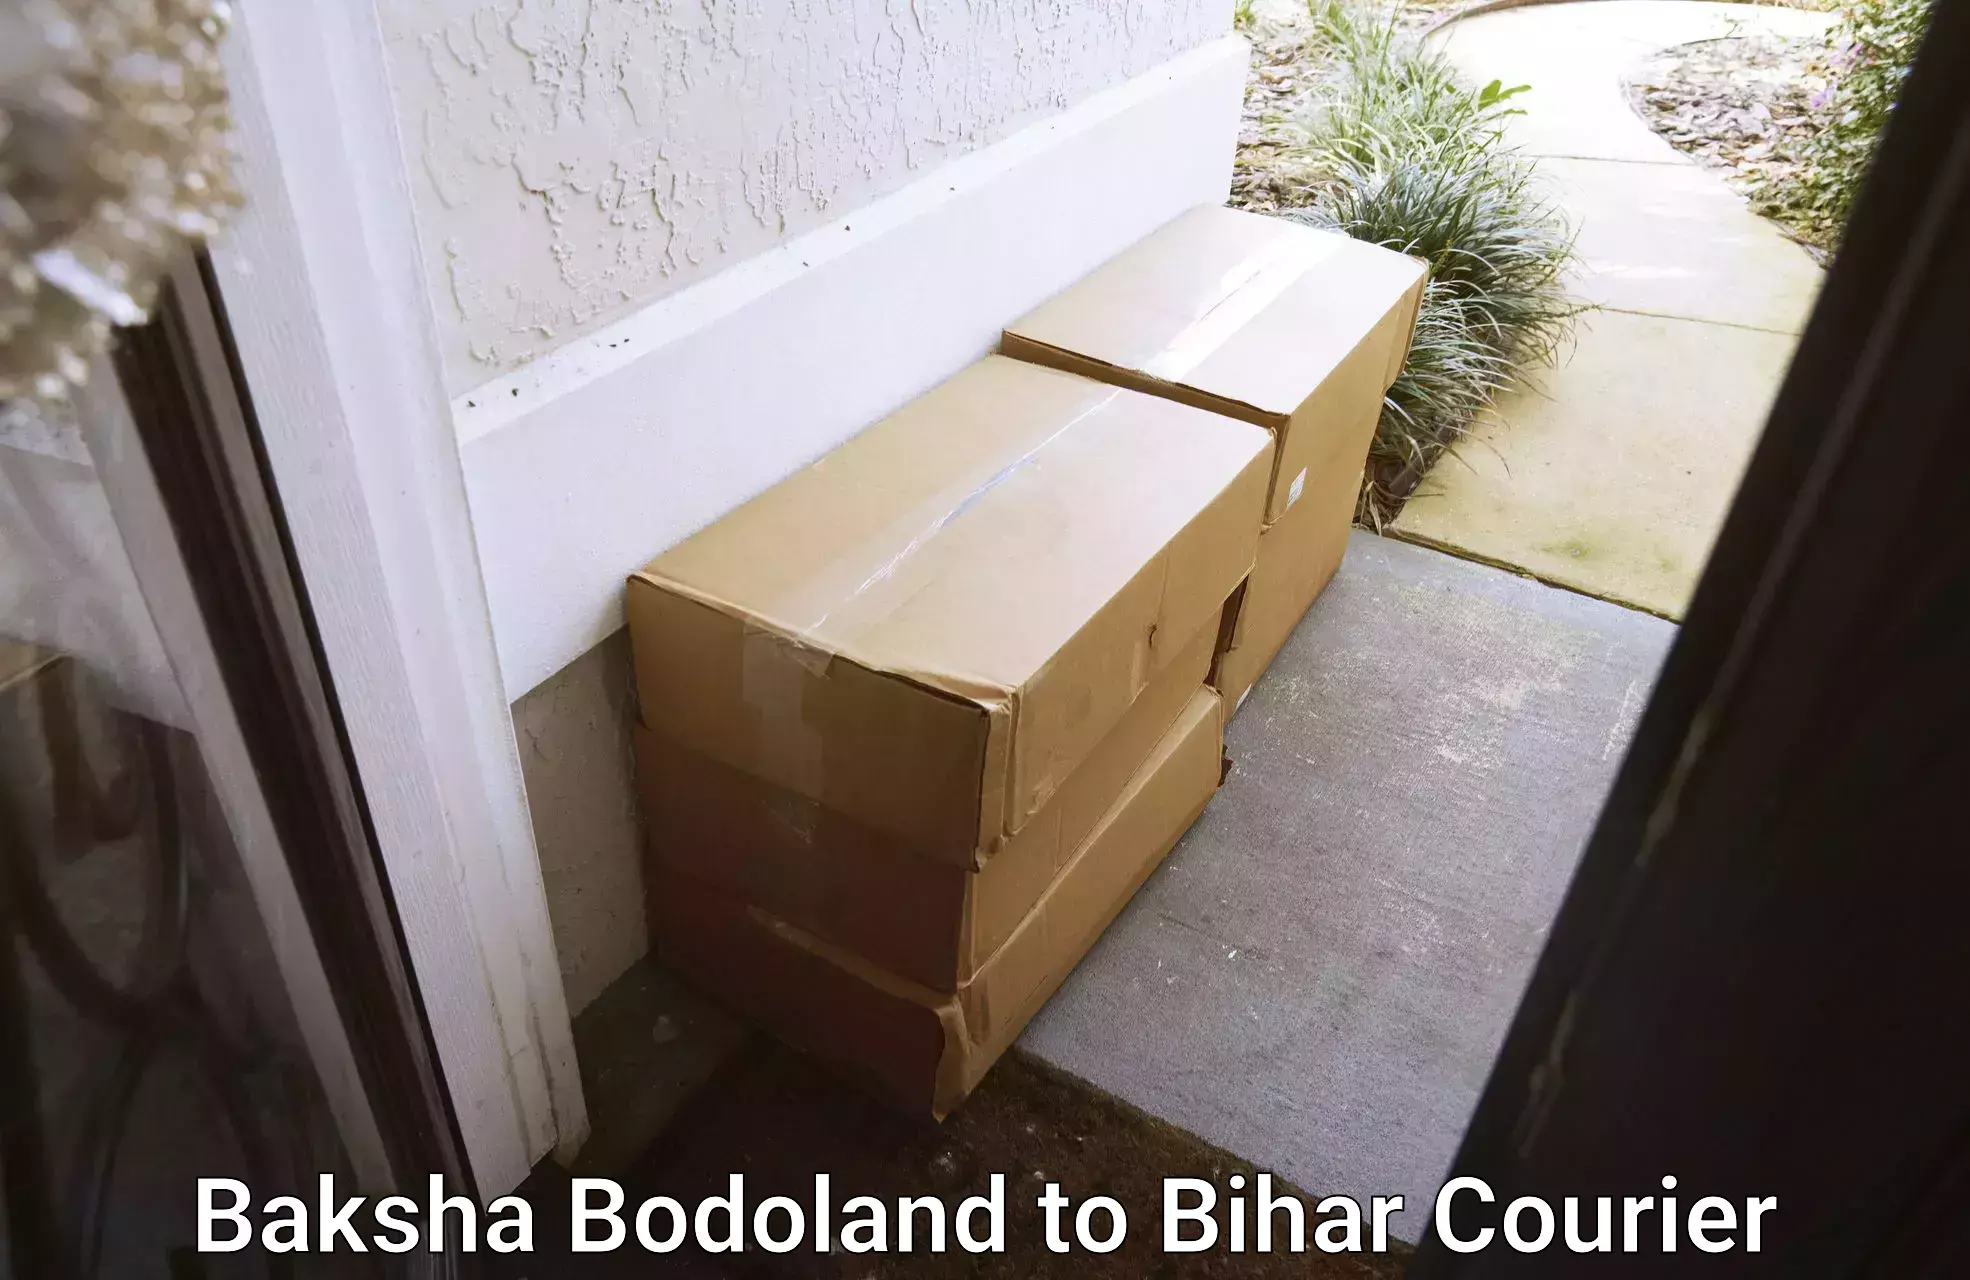 24/7 courier service in Baksha Bodoland to Jevargi